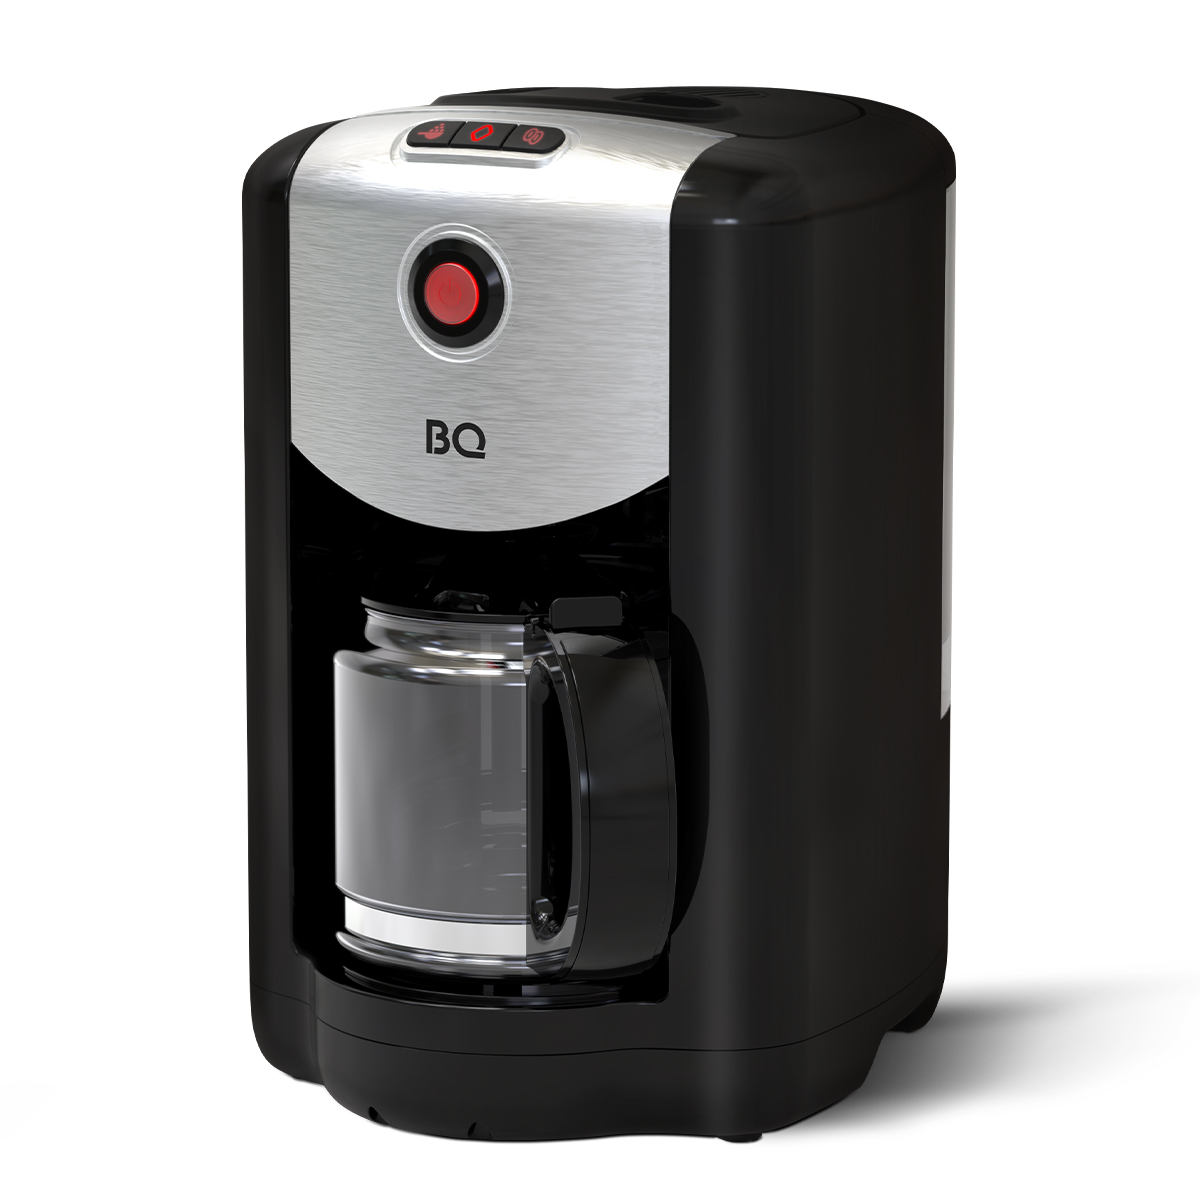 Кофеварка капельного типа BQ CM1009 серебристый, черный кофеварка капельная tefal cm361838 серебристый